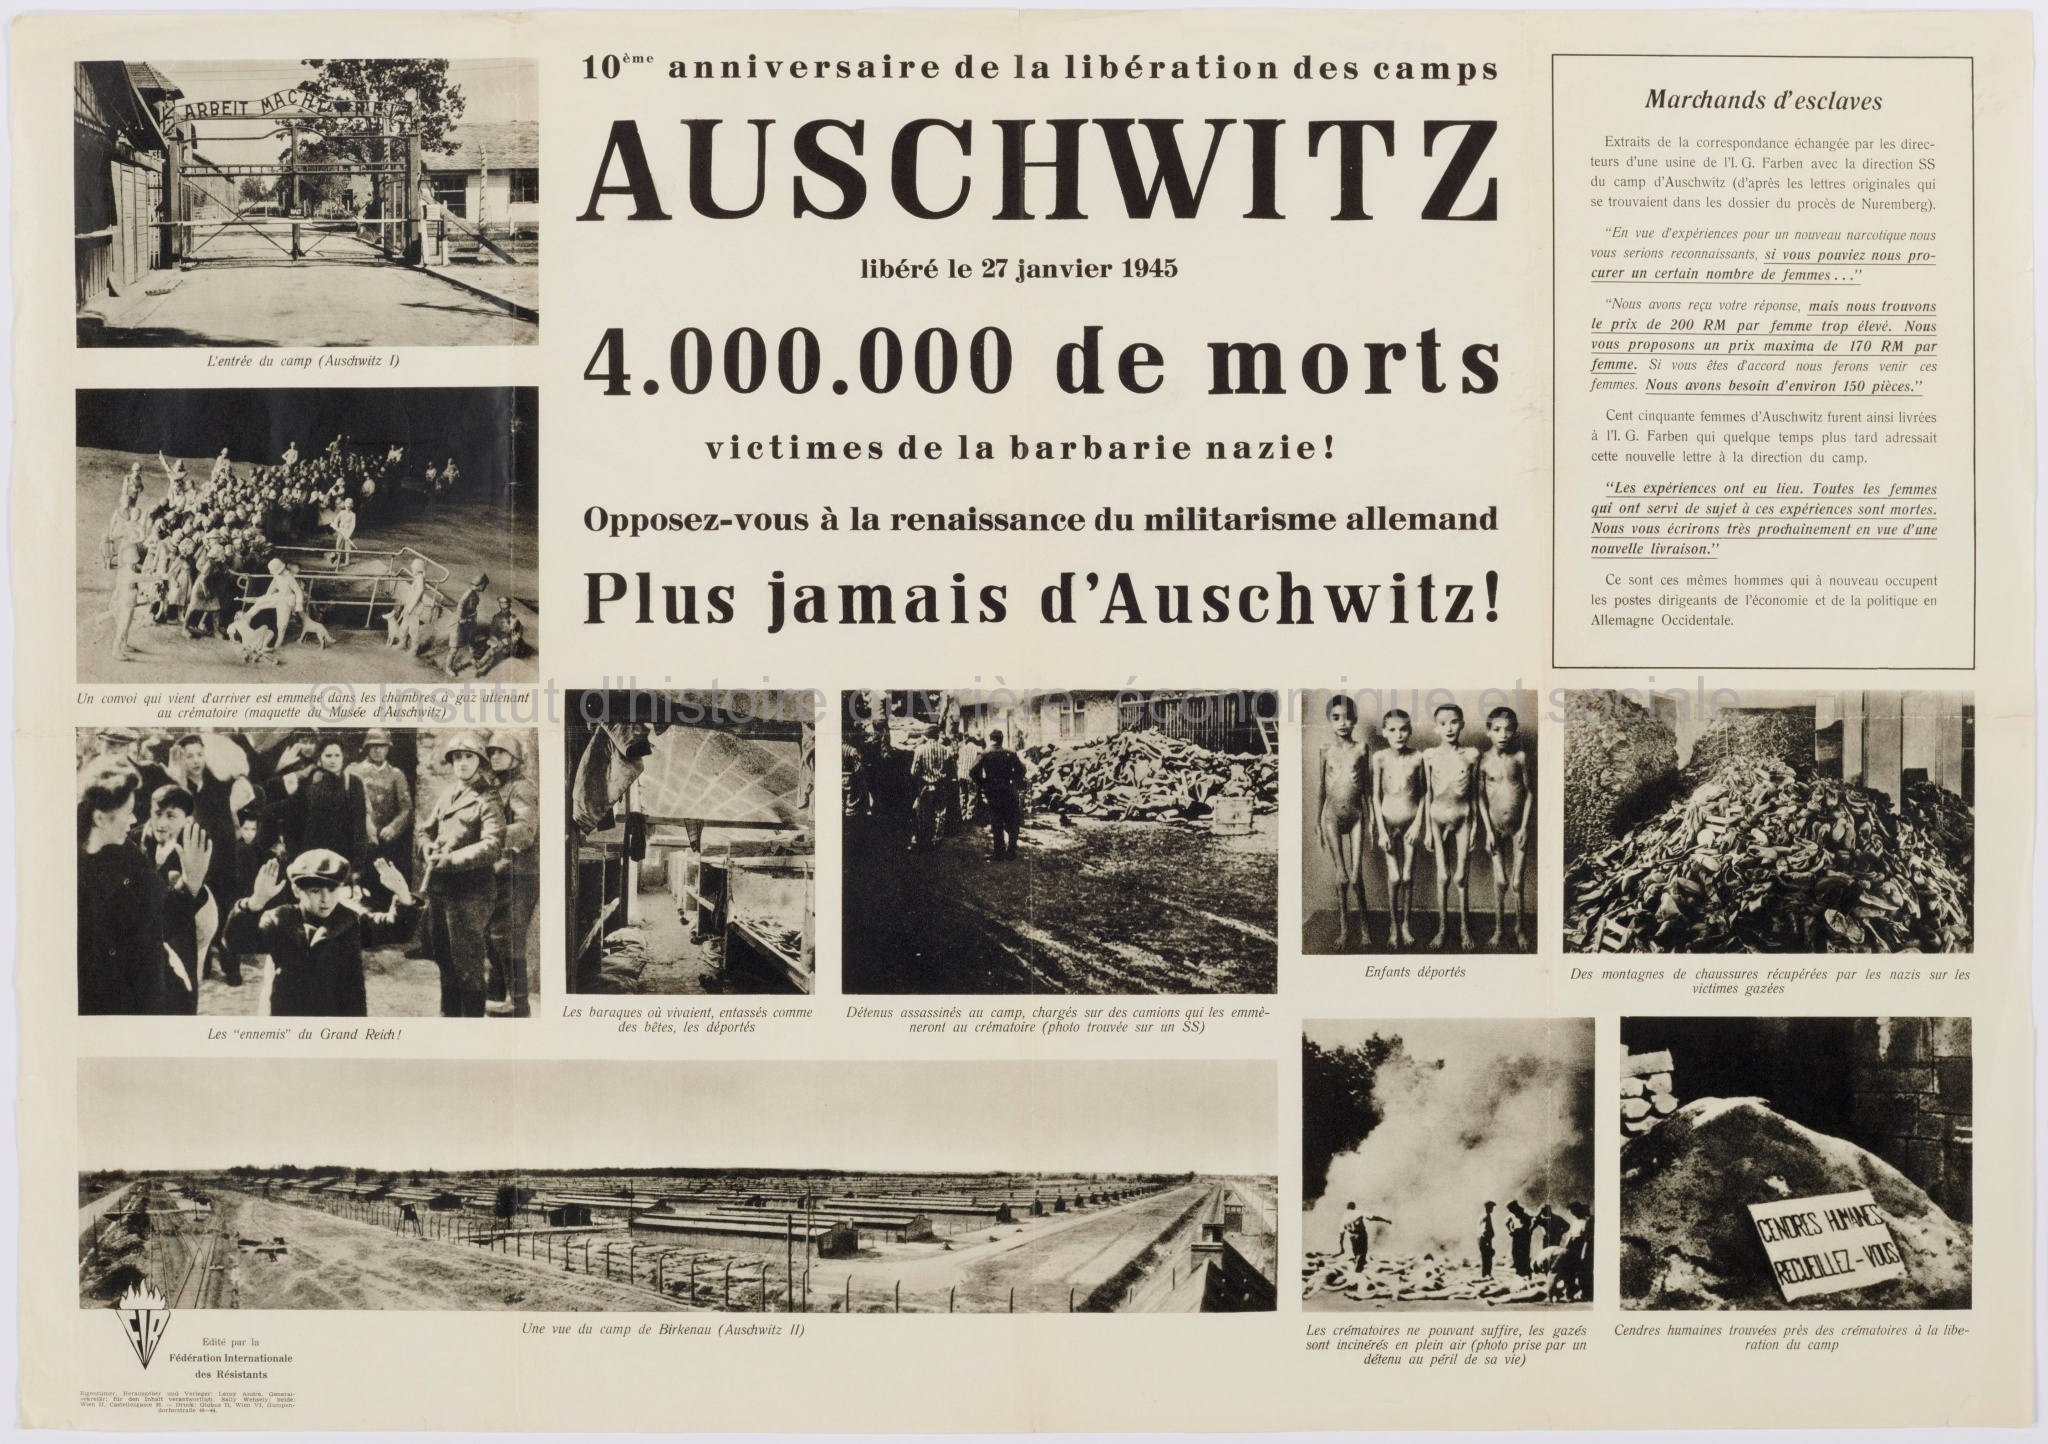 10ème anniversaire de la libération des camps : Auschwitz, libéré le 27 janvier 1945